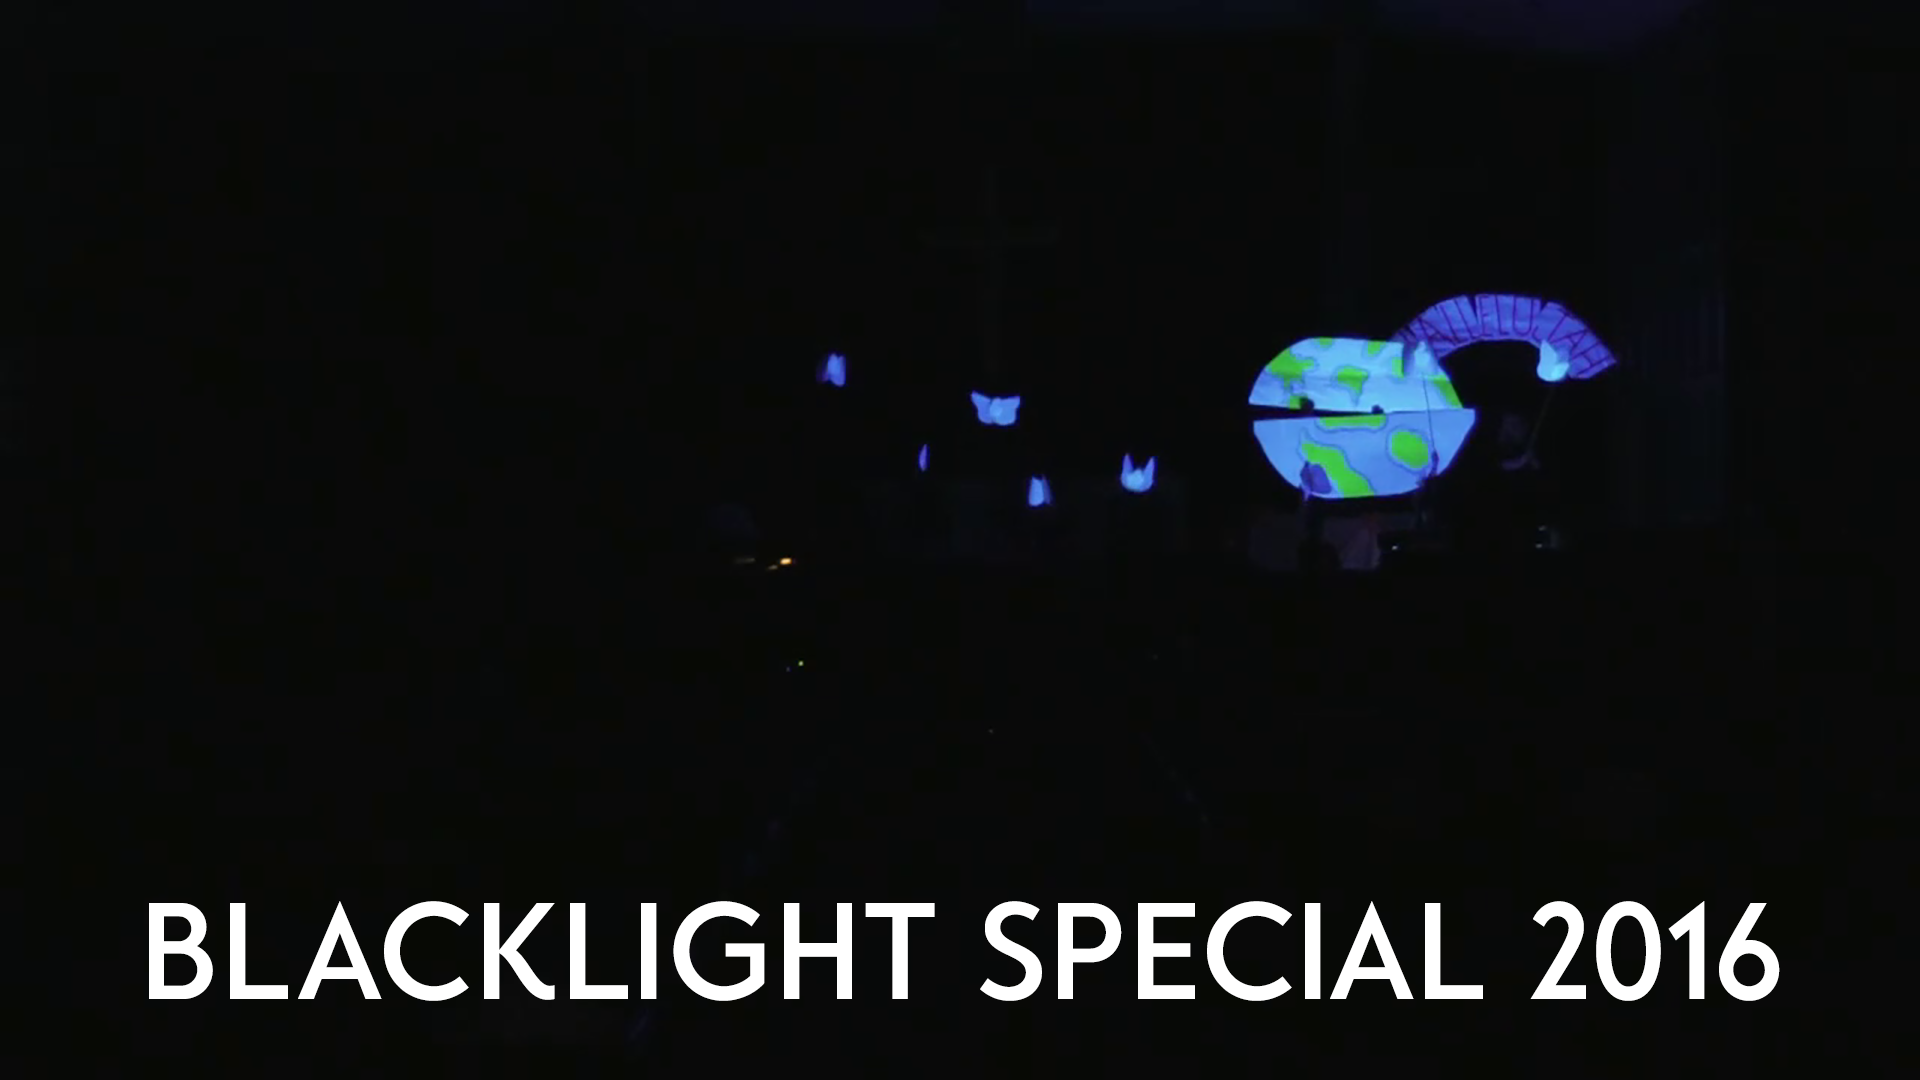 Blacklight Special 2016 Image